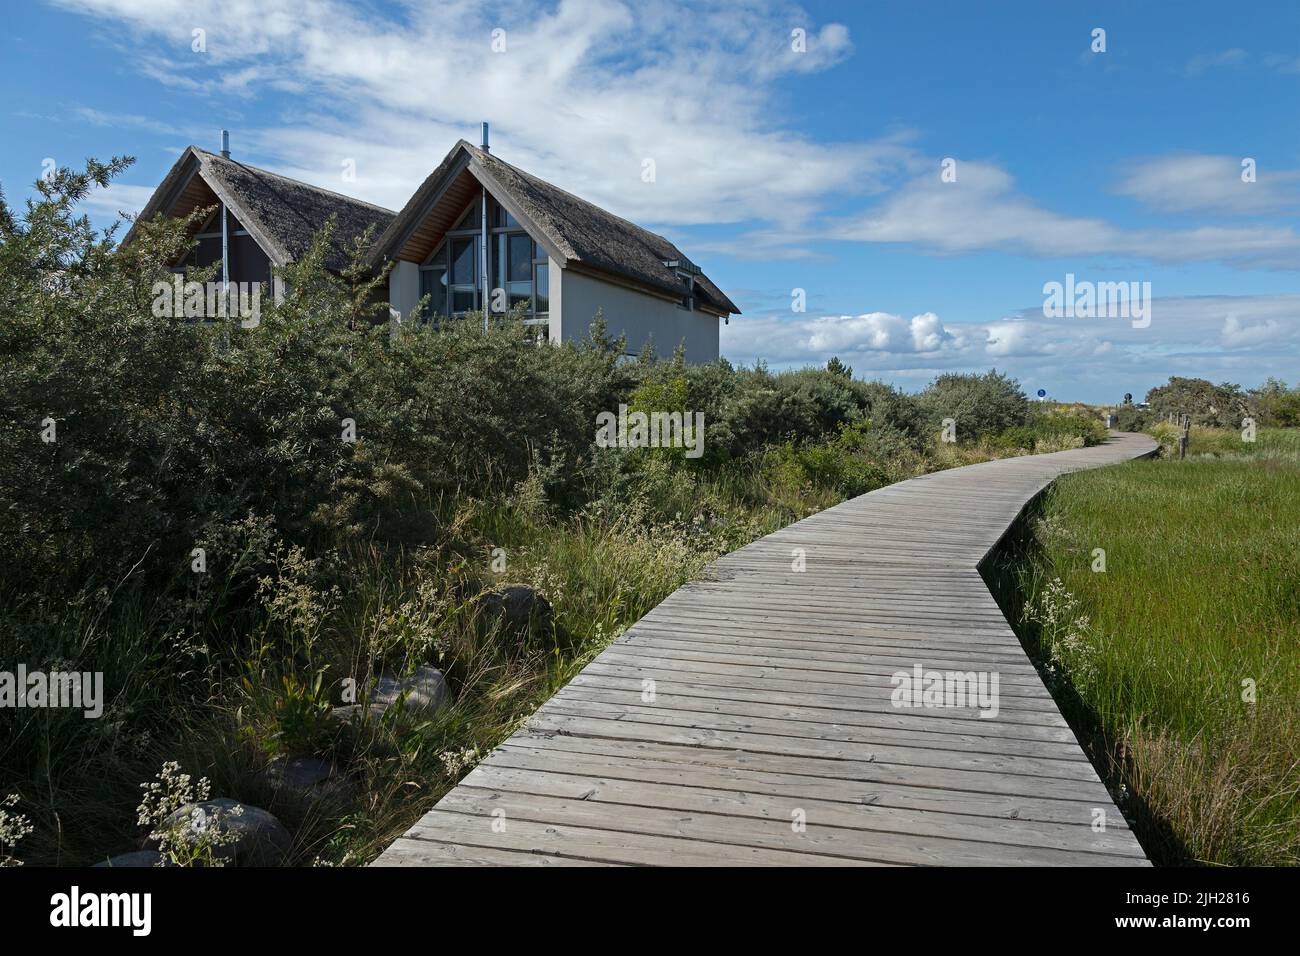 Thatched houses, pedestrian bridge through biotope, Steinwarder Peninsula, Heiligenhafen, Schleswig-Holstein, Germany Stock Photo